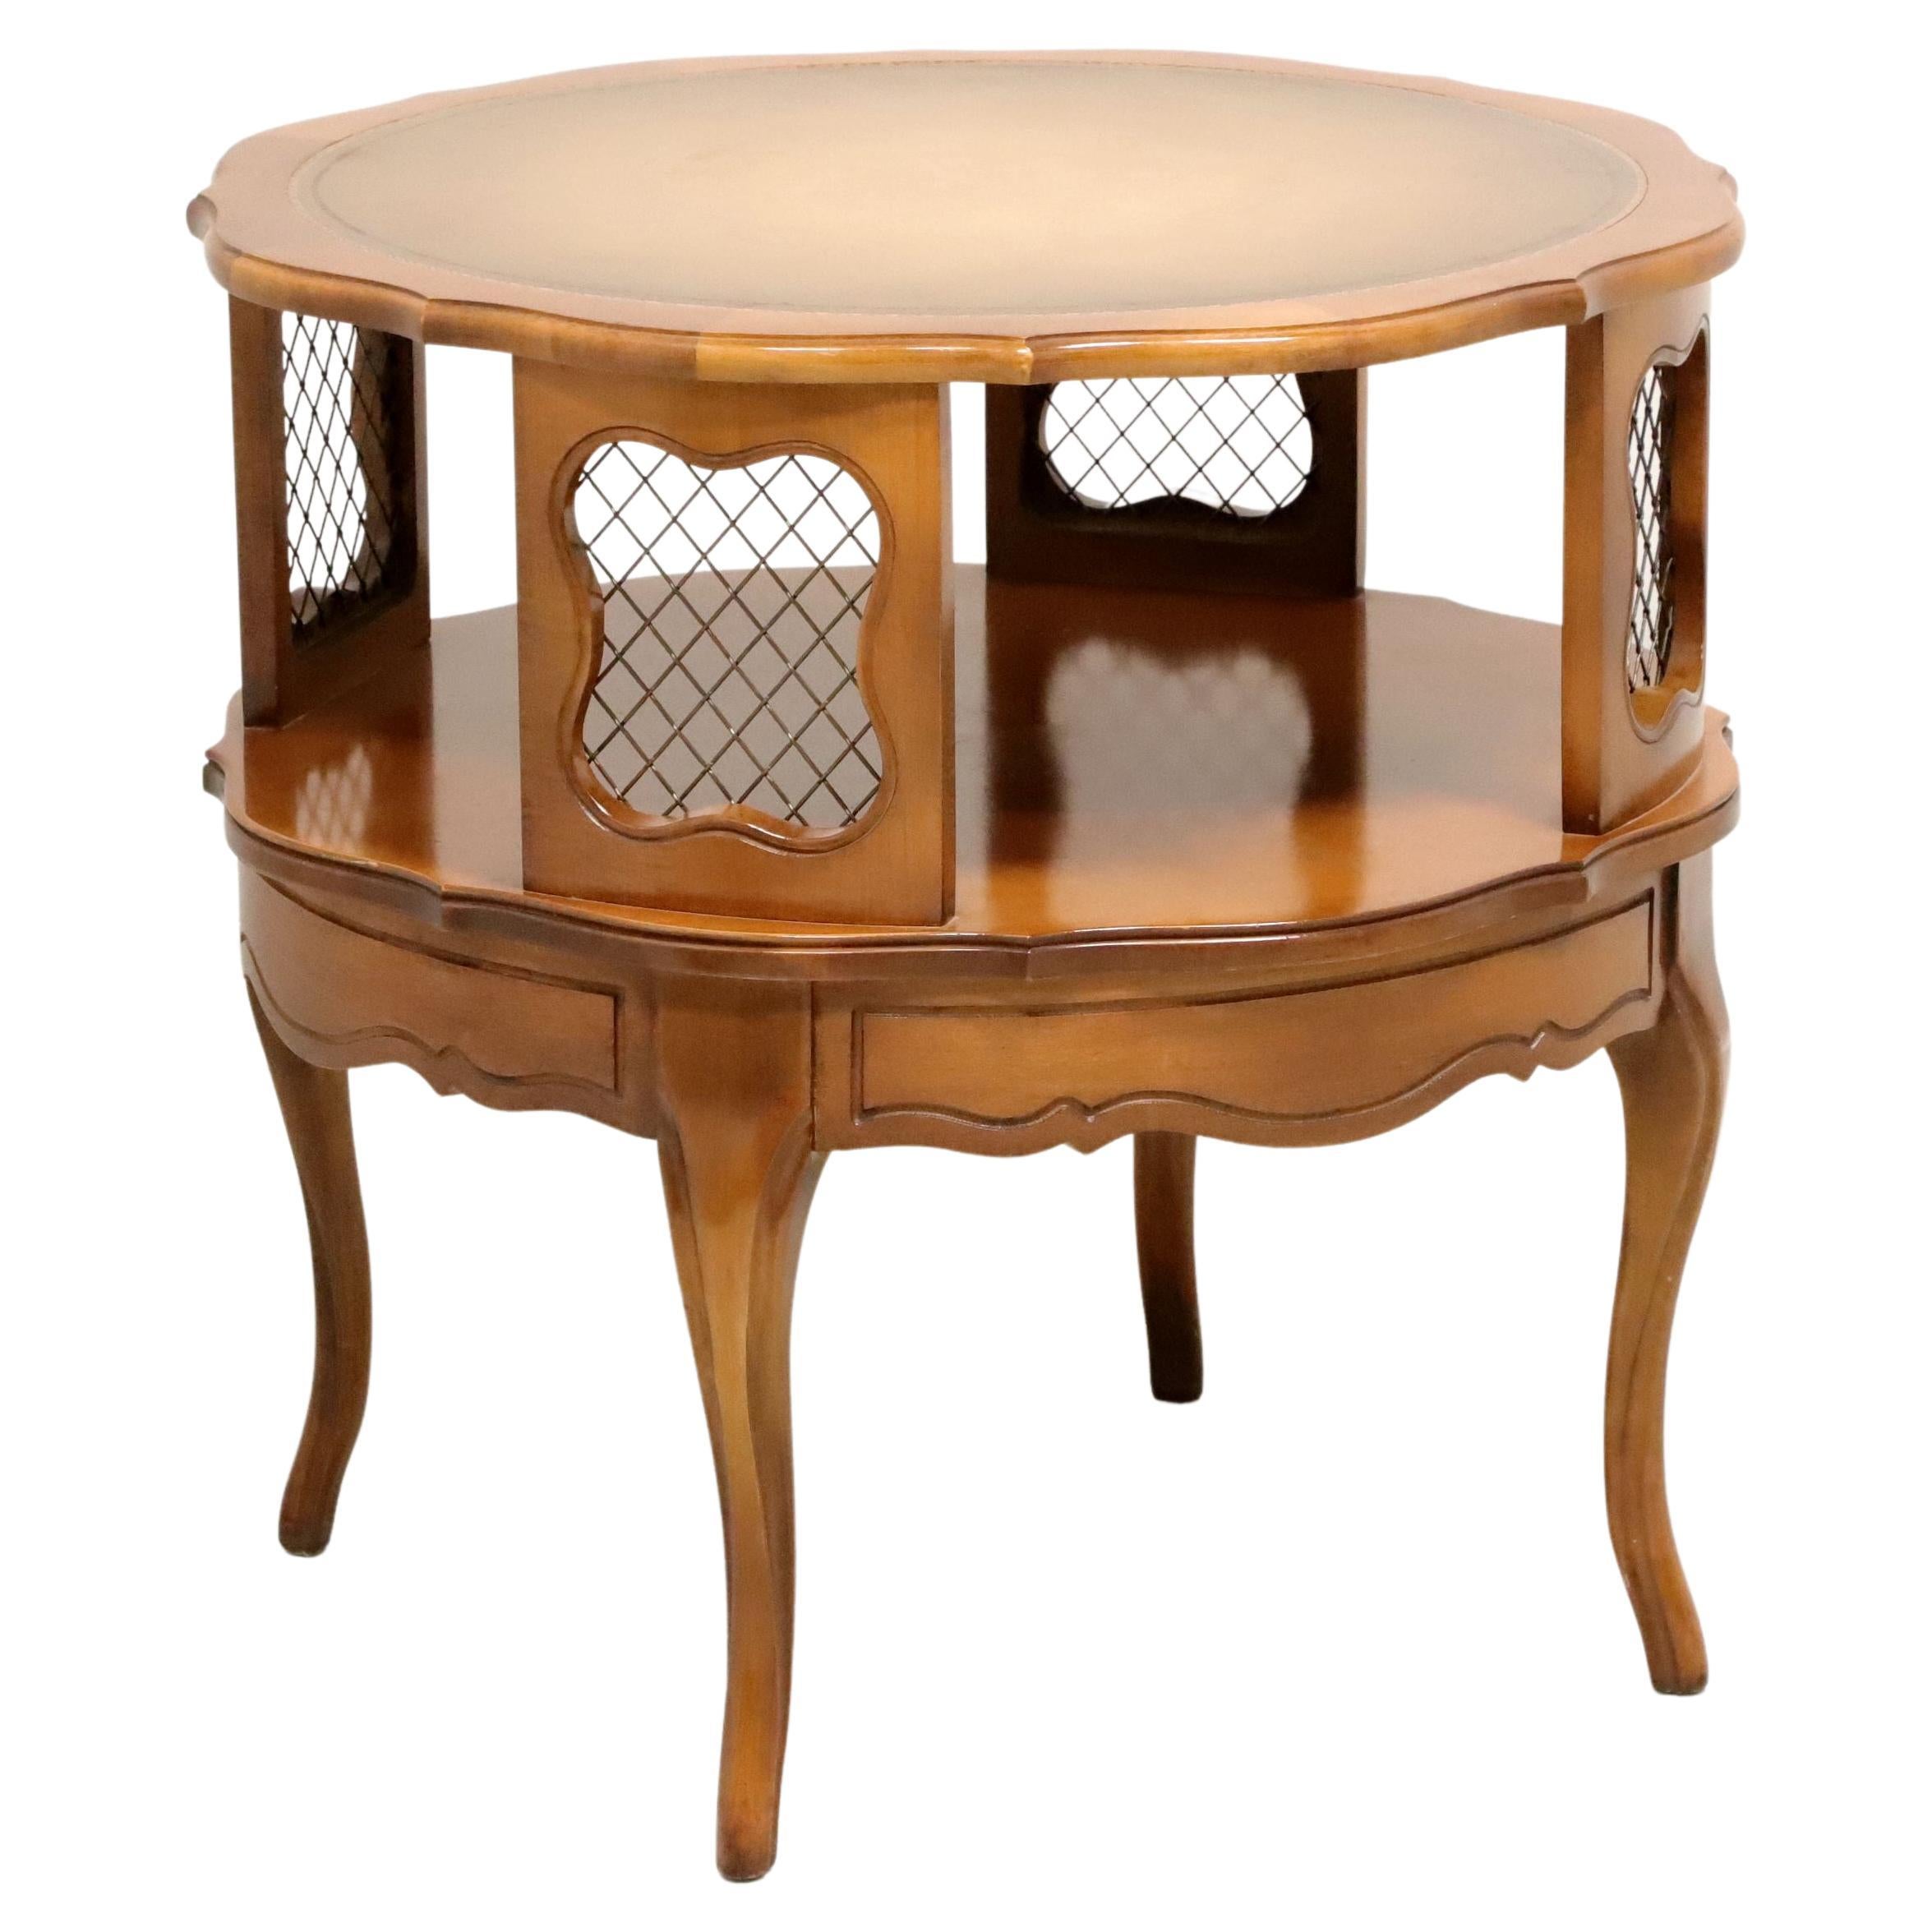 Table d'appoint ronde en bois dur, maille de laiton et cuir du milieu du 20e siècle